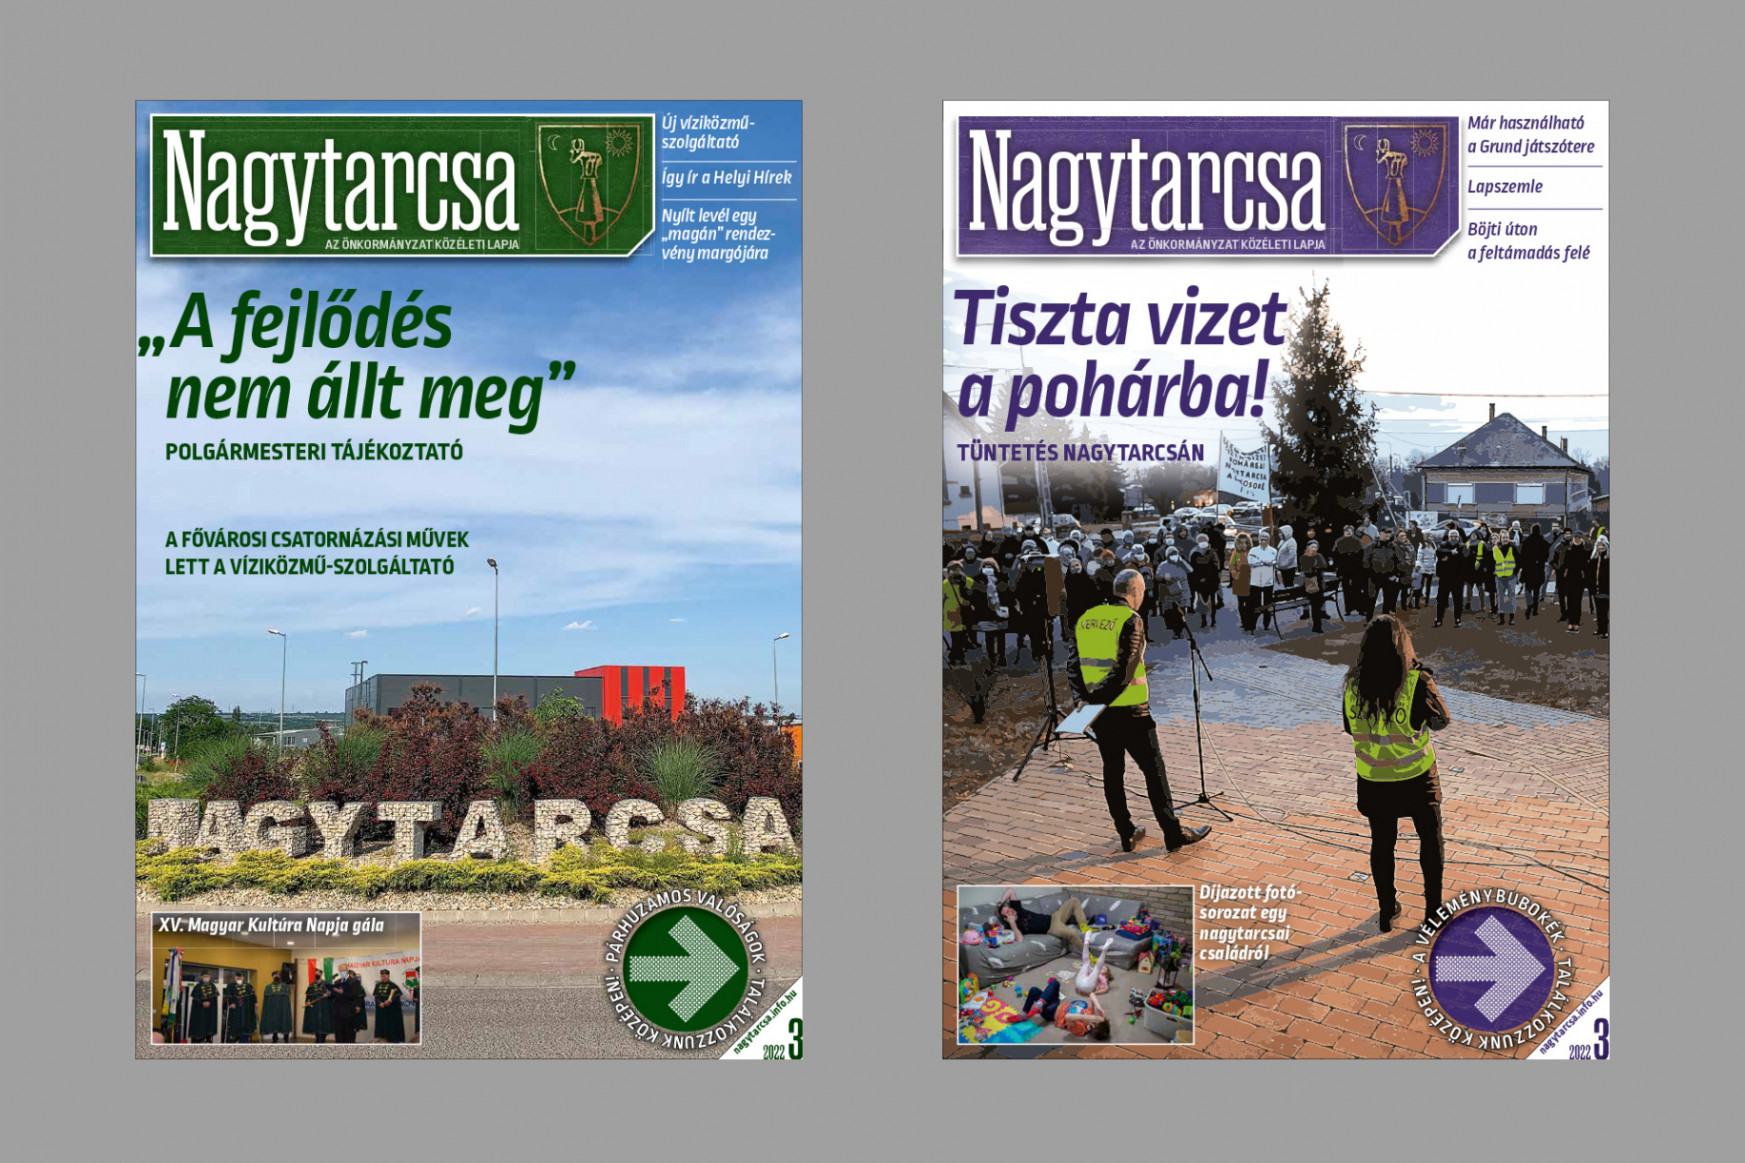 Egyik fele propaganda, másik fele korrekt újság – nem nyomdahiba, két irányból lehet olvasni egy magyar újságot